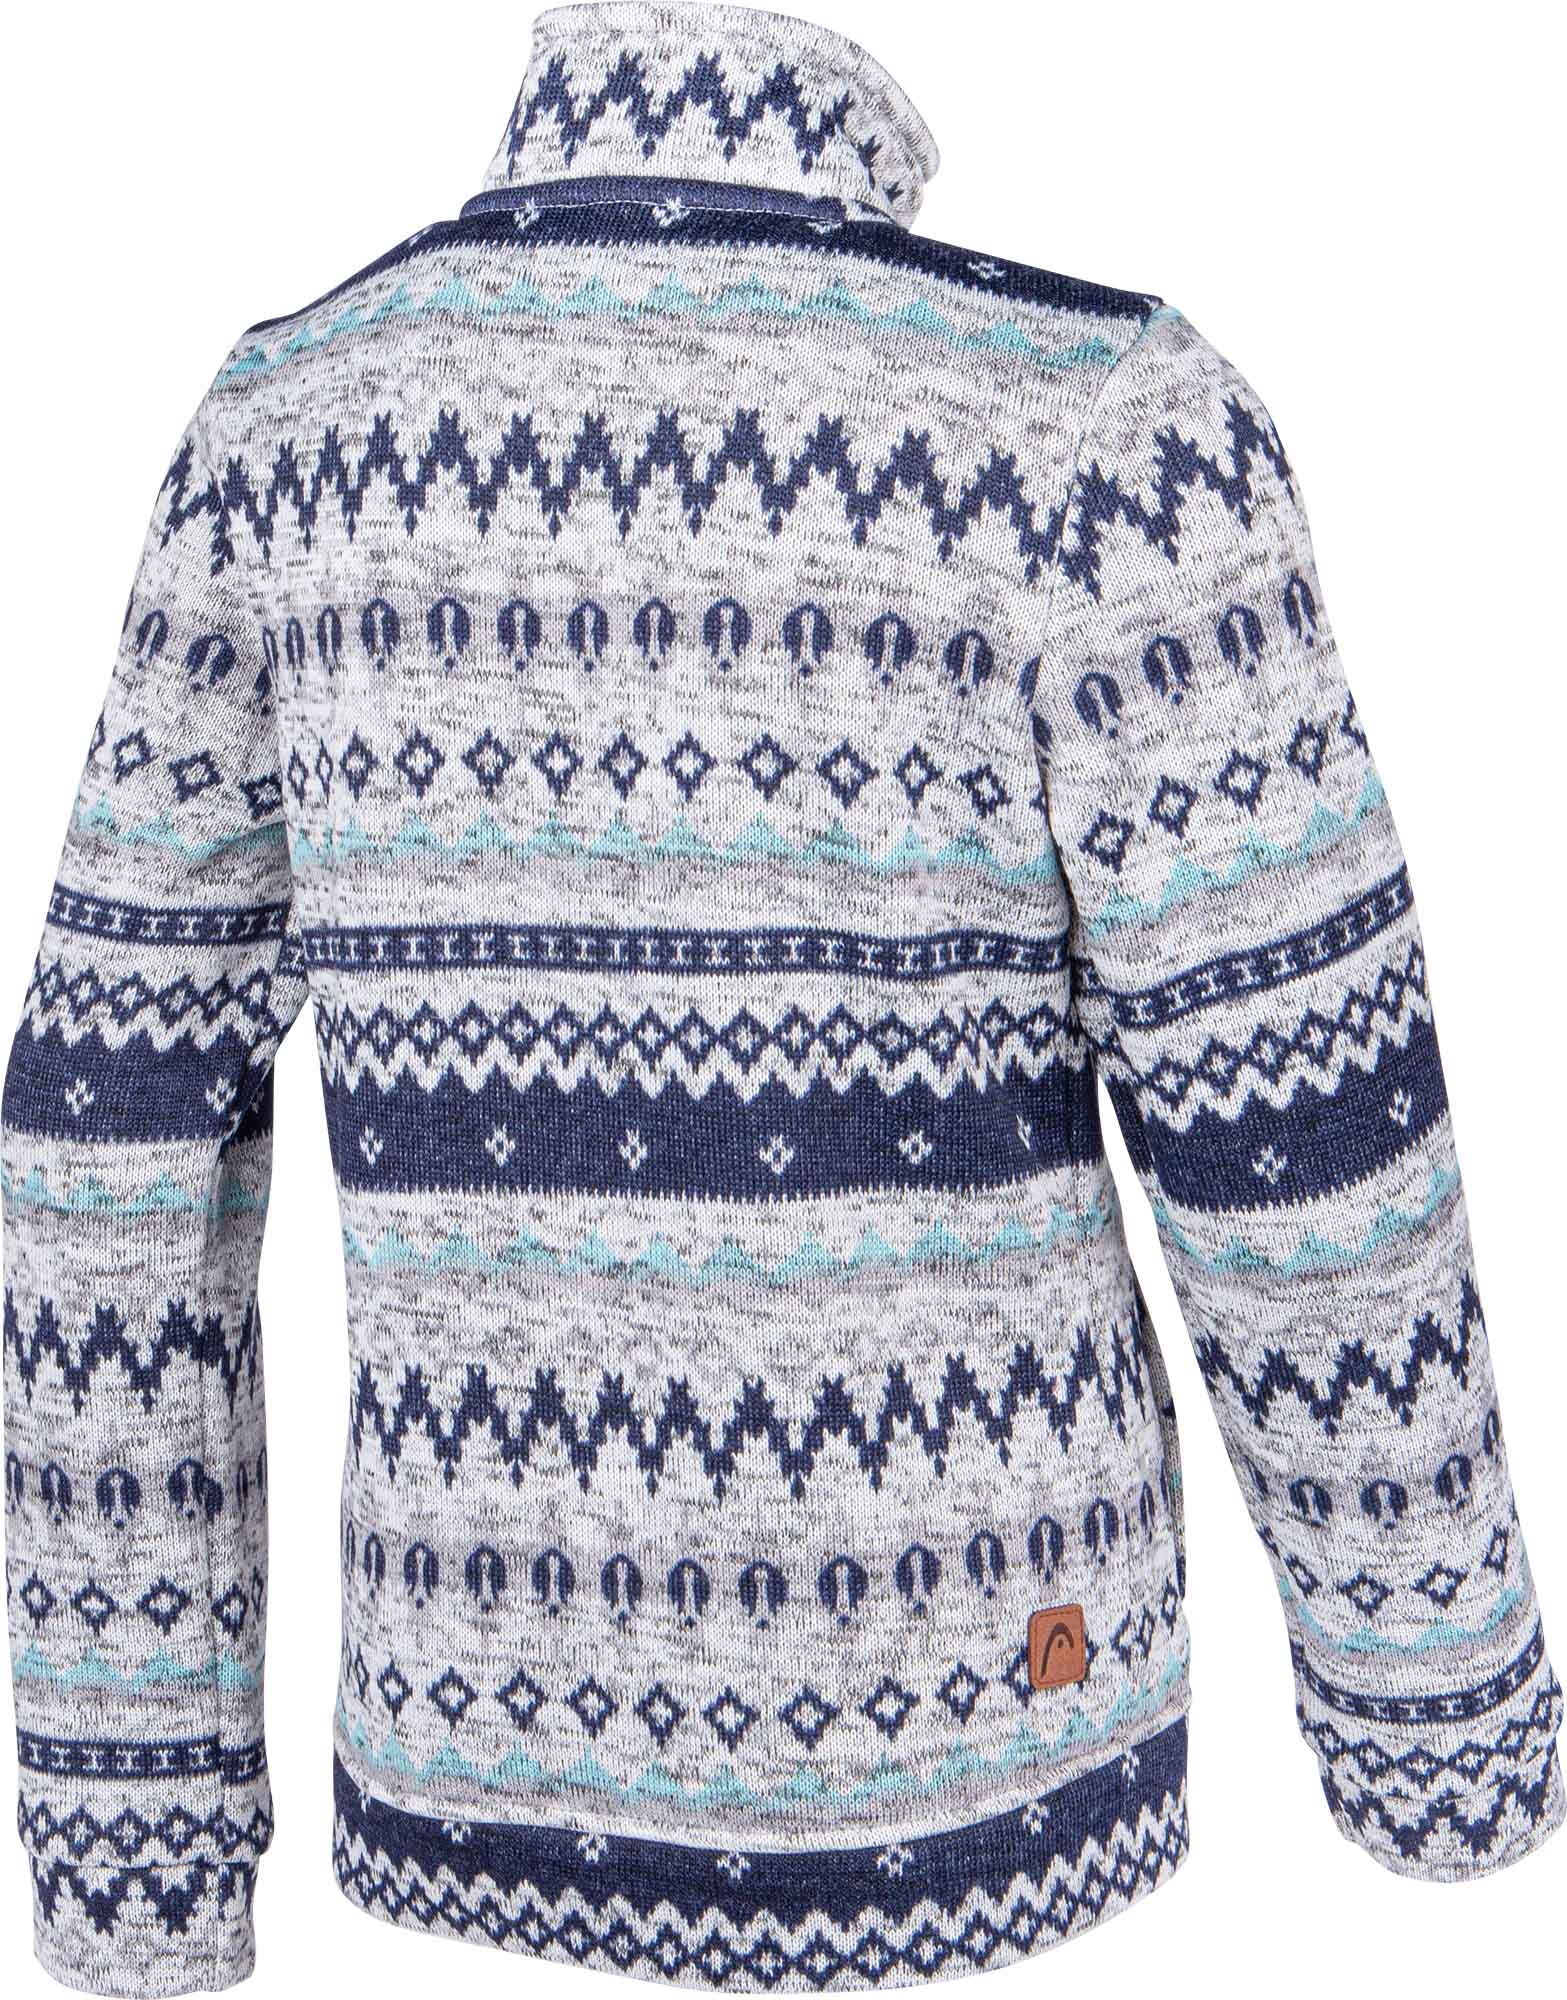 Children's fleece sweatshirt